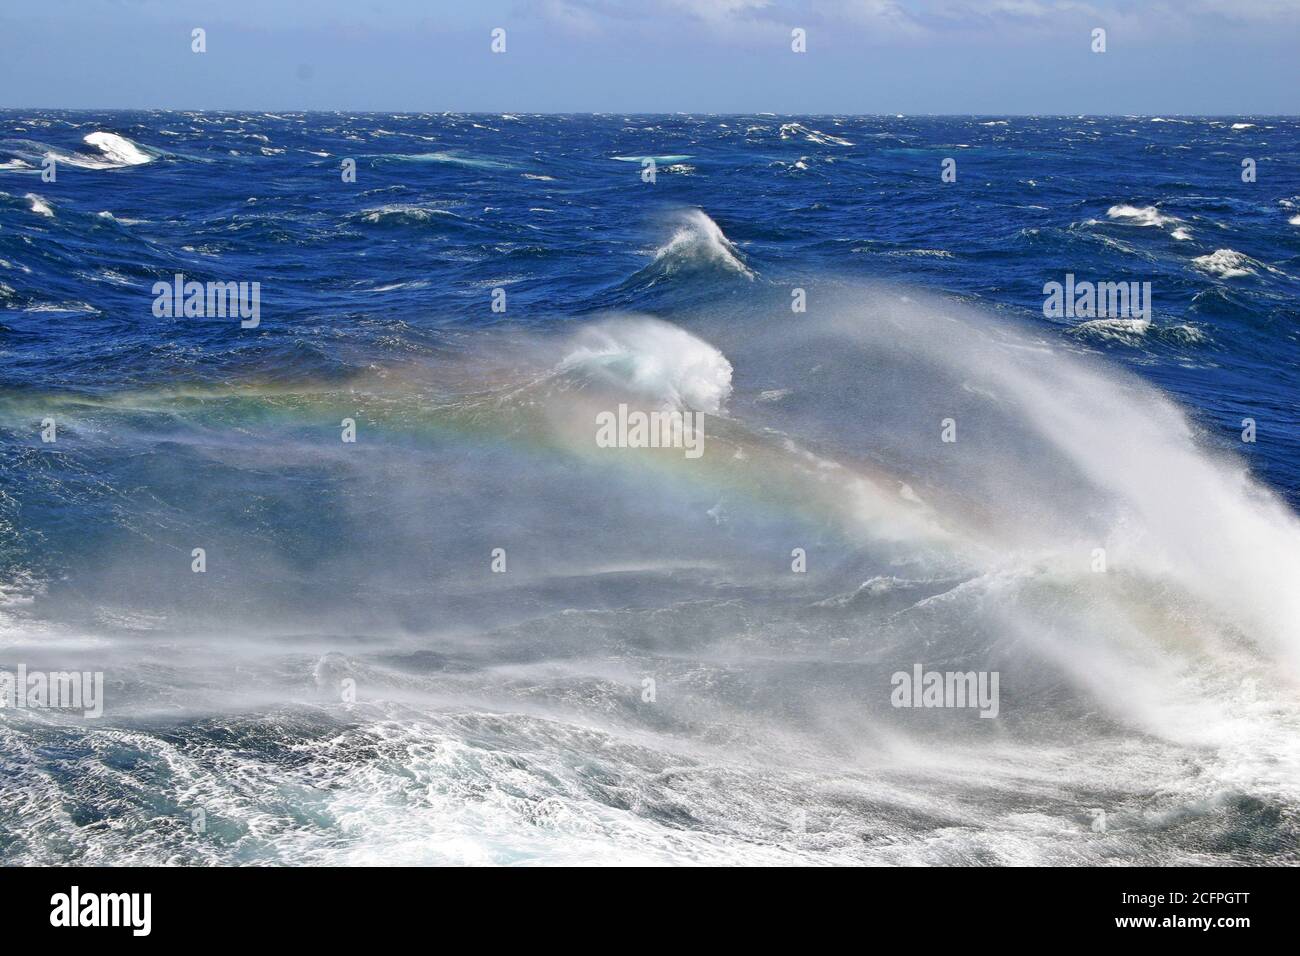 Mer agitée de l'océan Pacifique sud, grandes vagues avec arc-en-ciel montrant dans la mousse venant du sommet des vagues en collision, Nouvelle-Zélande Banque D'Images